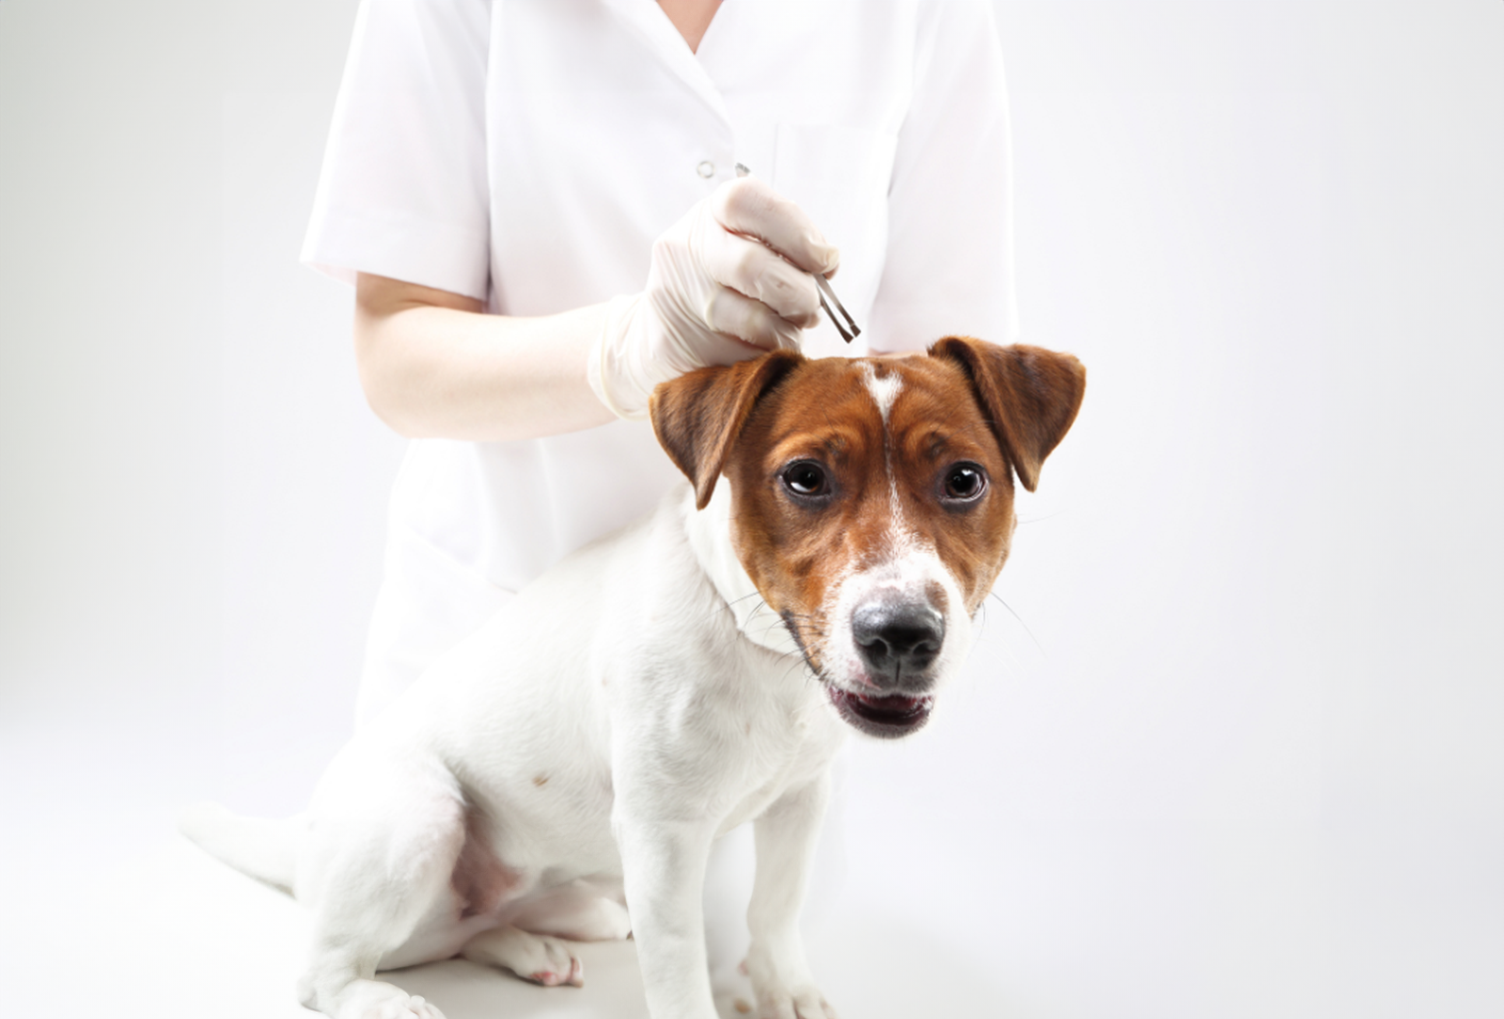 bilde av veterinær som fjerner flått fra hund med pinsett